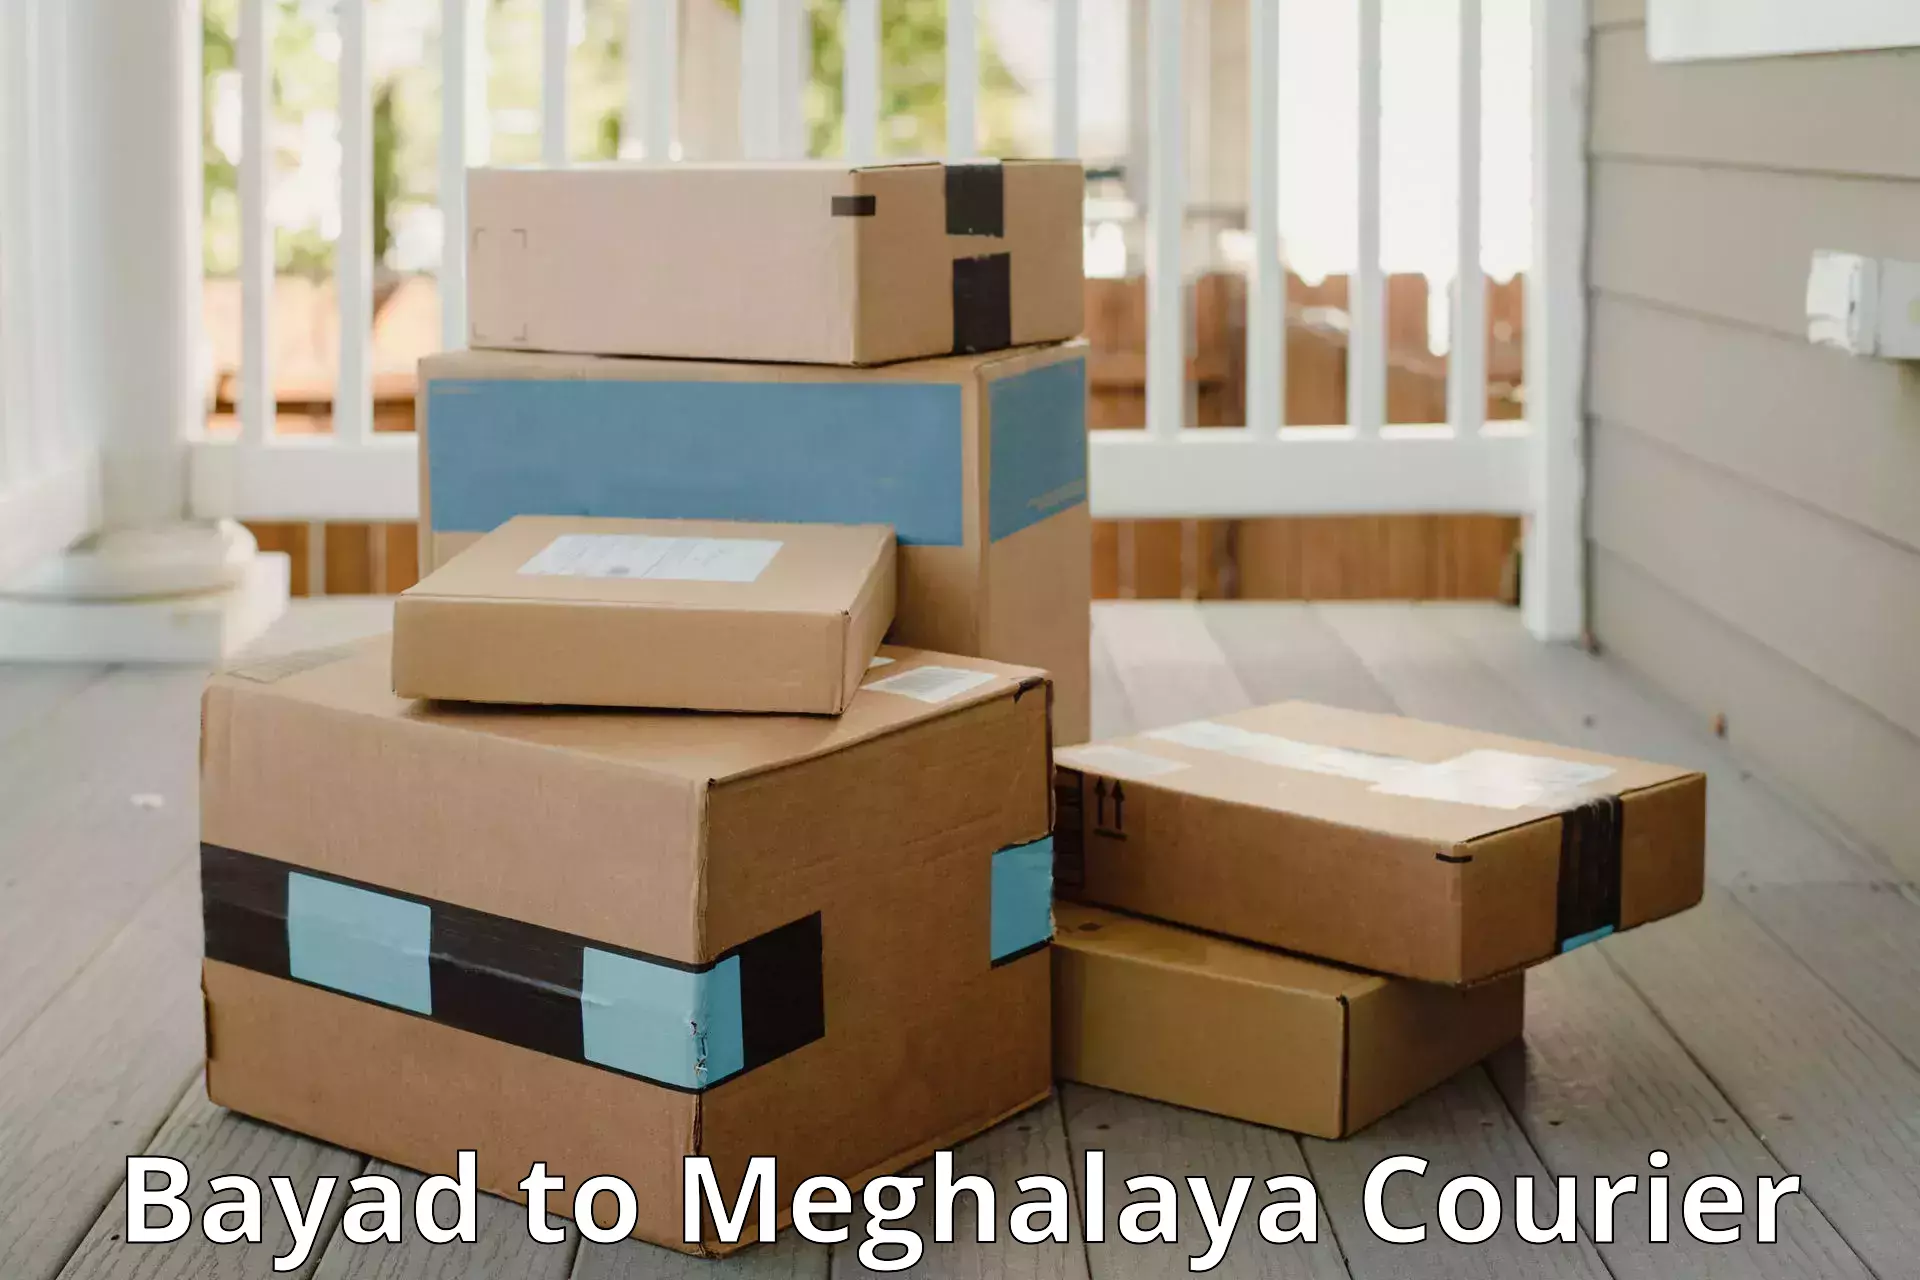 Baggage transport scheduler Bayad to Meghalaya